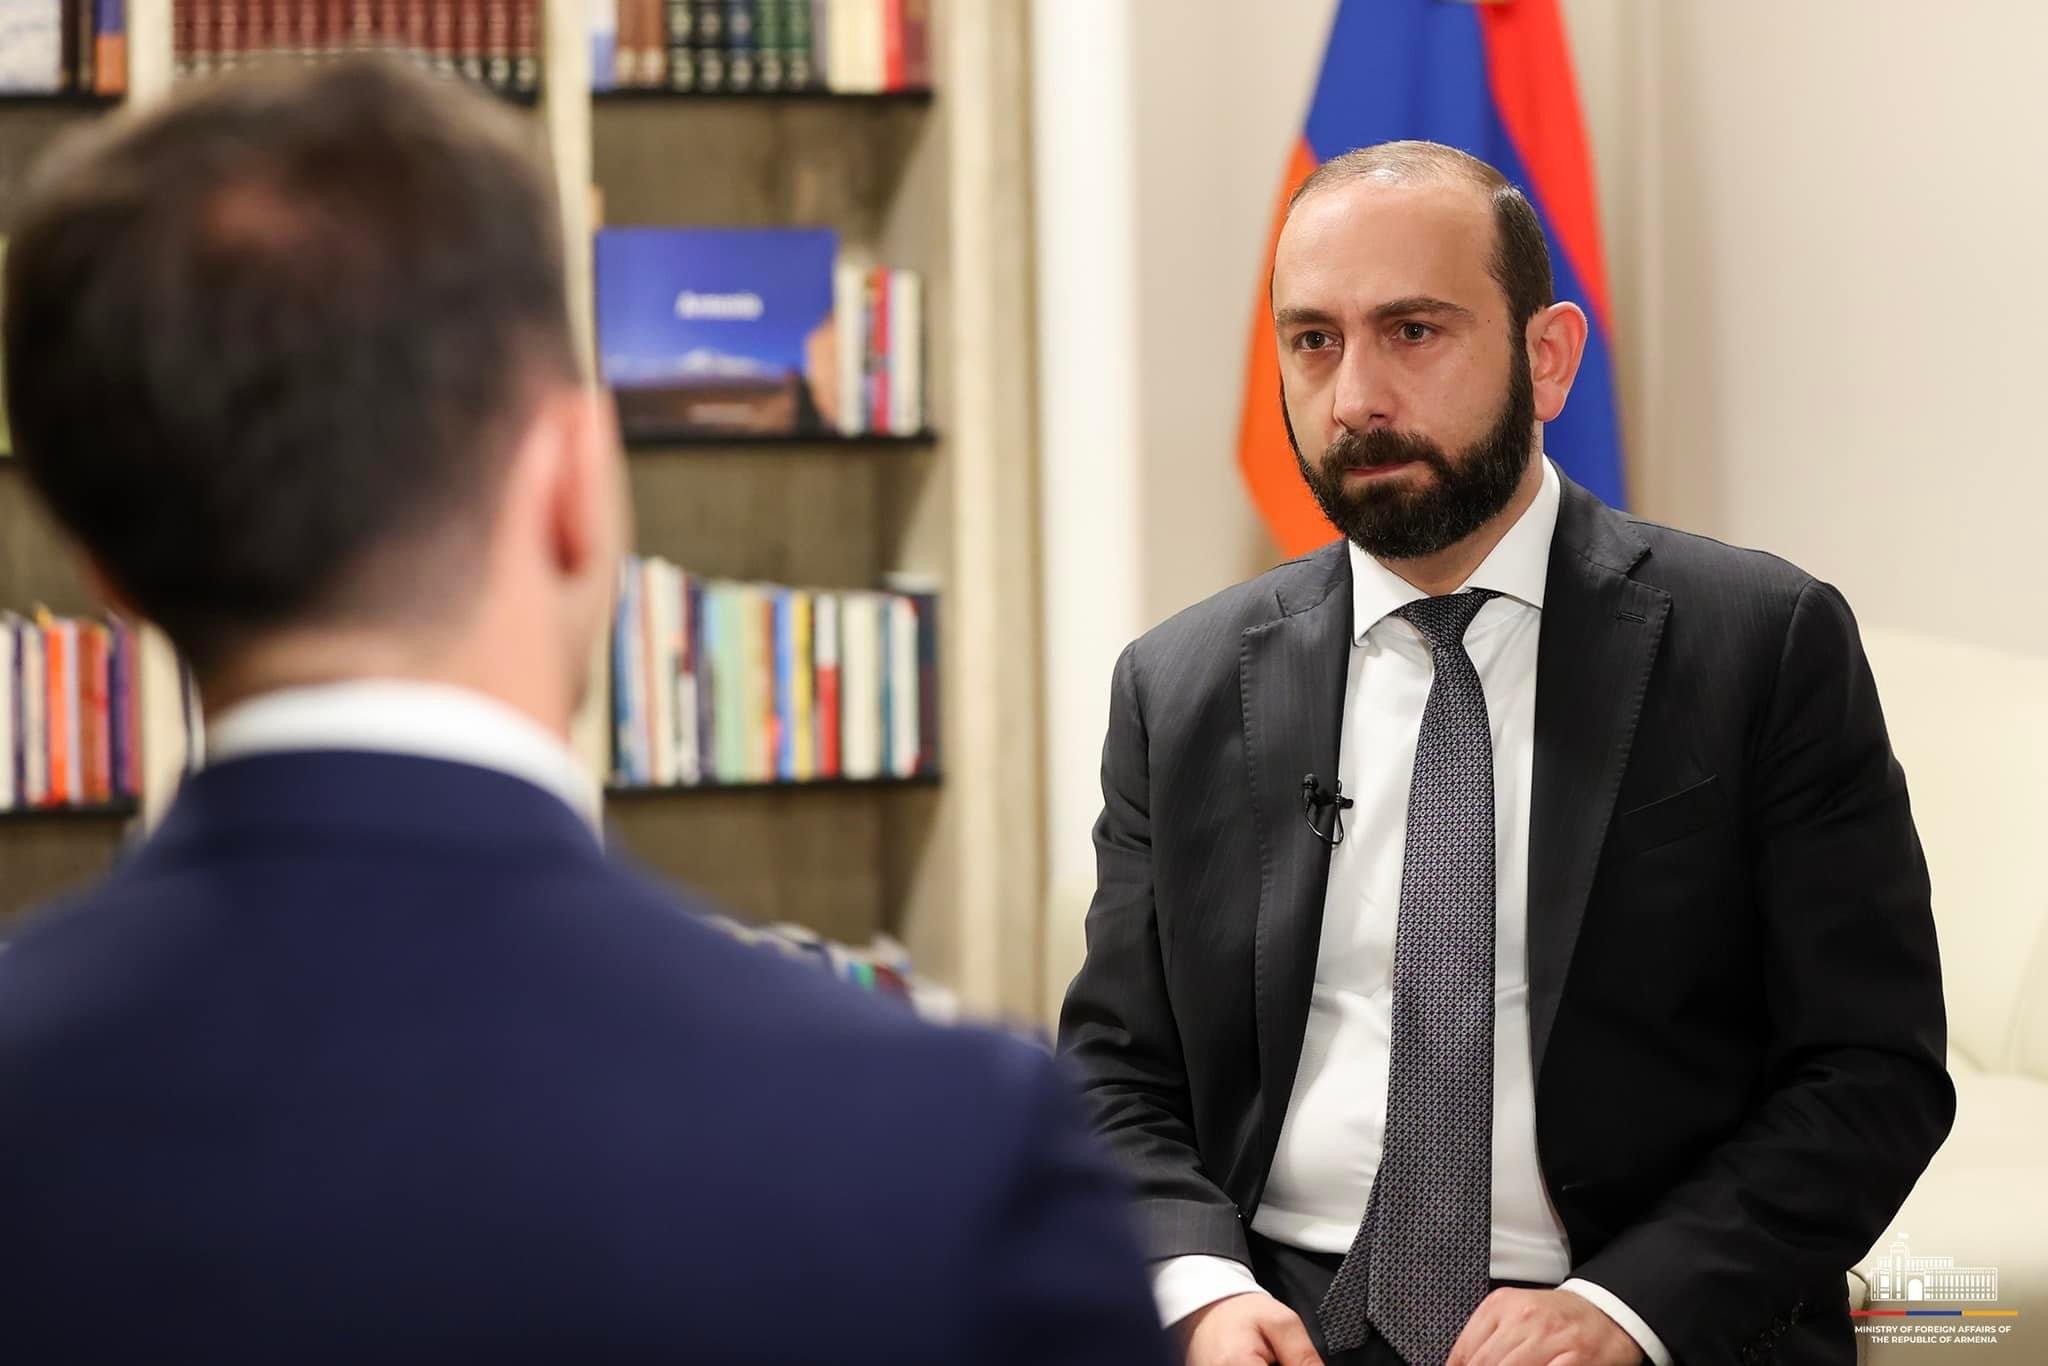 Մենք հավատում ենք, որ հնարավոր է հասնել Ադրբեջանի հետ խաղաղության պայմանագրի կնքմանը. Արարատ Միրզոյան